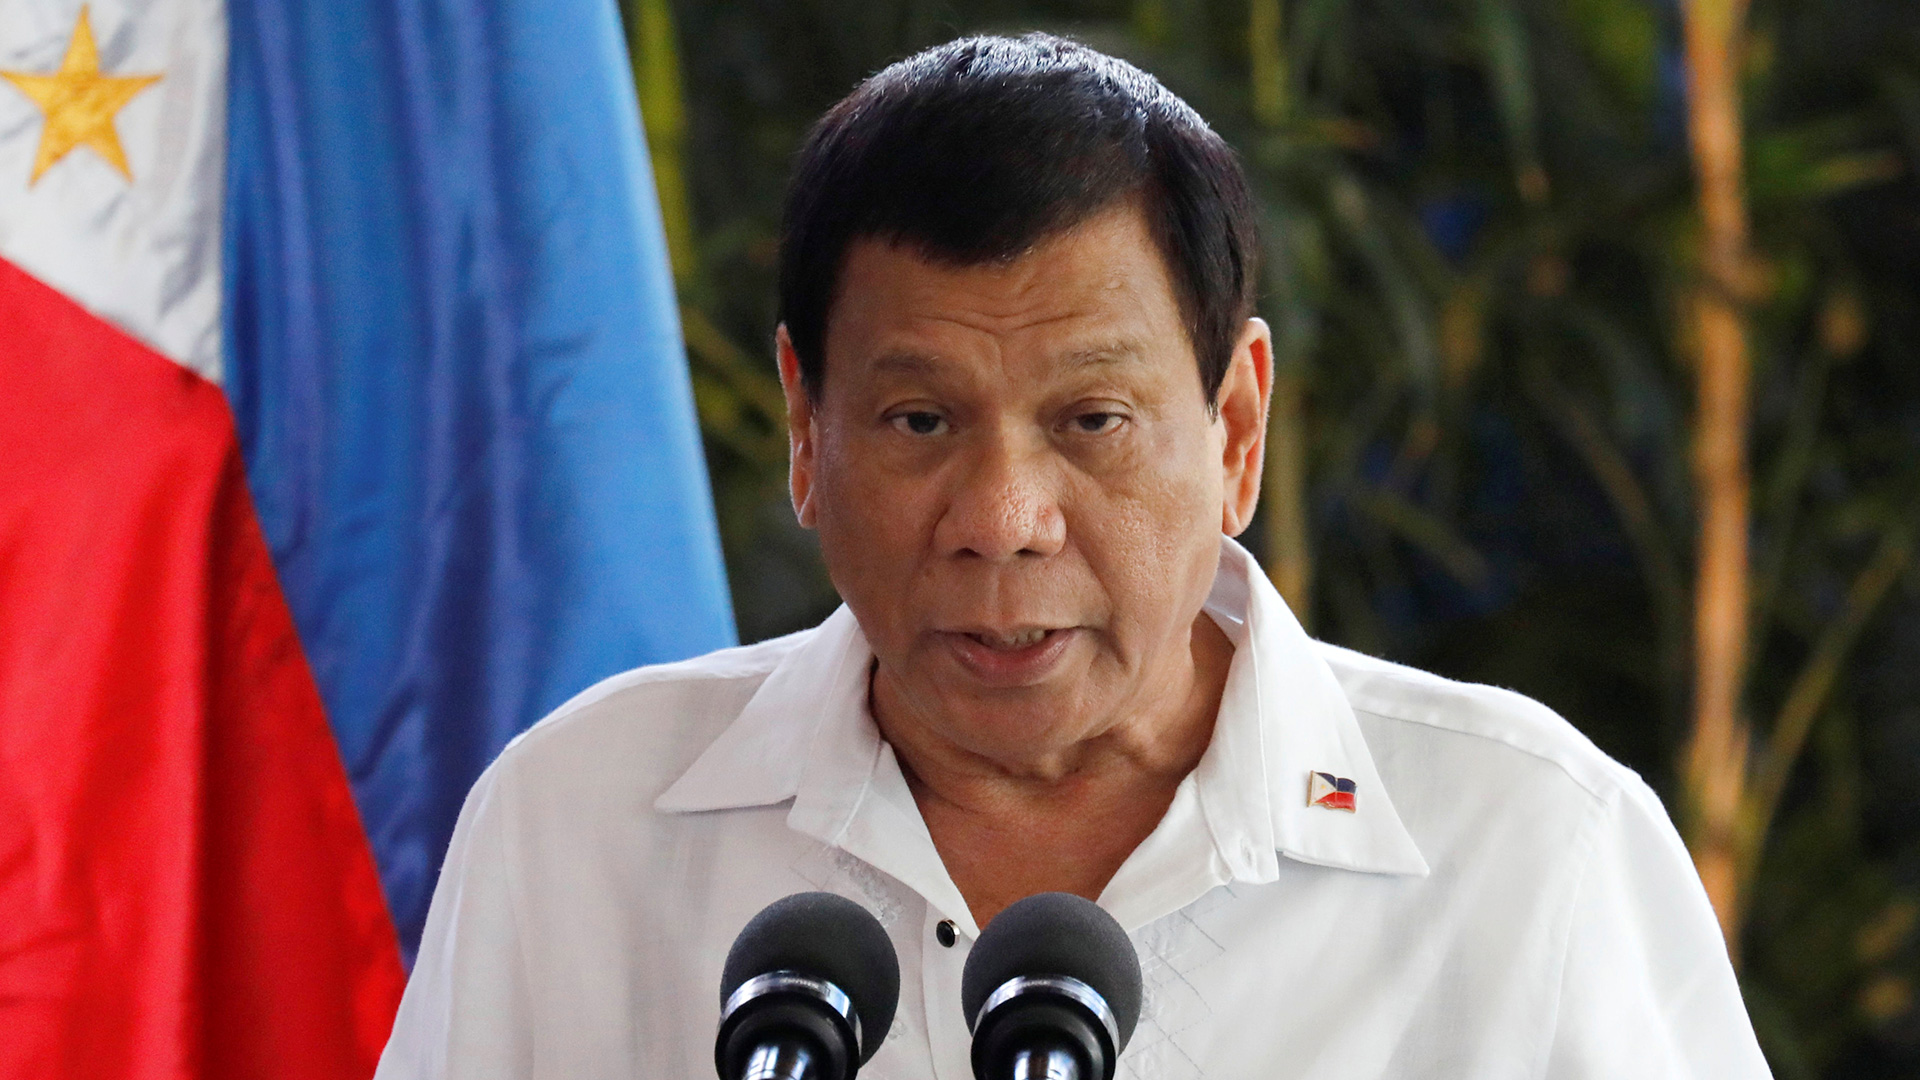 Duterte asegura que mató a puñaladas a una persona cuando era adolescente